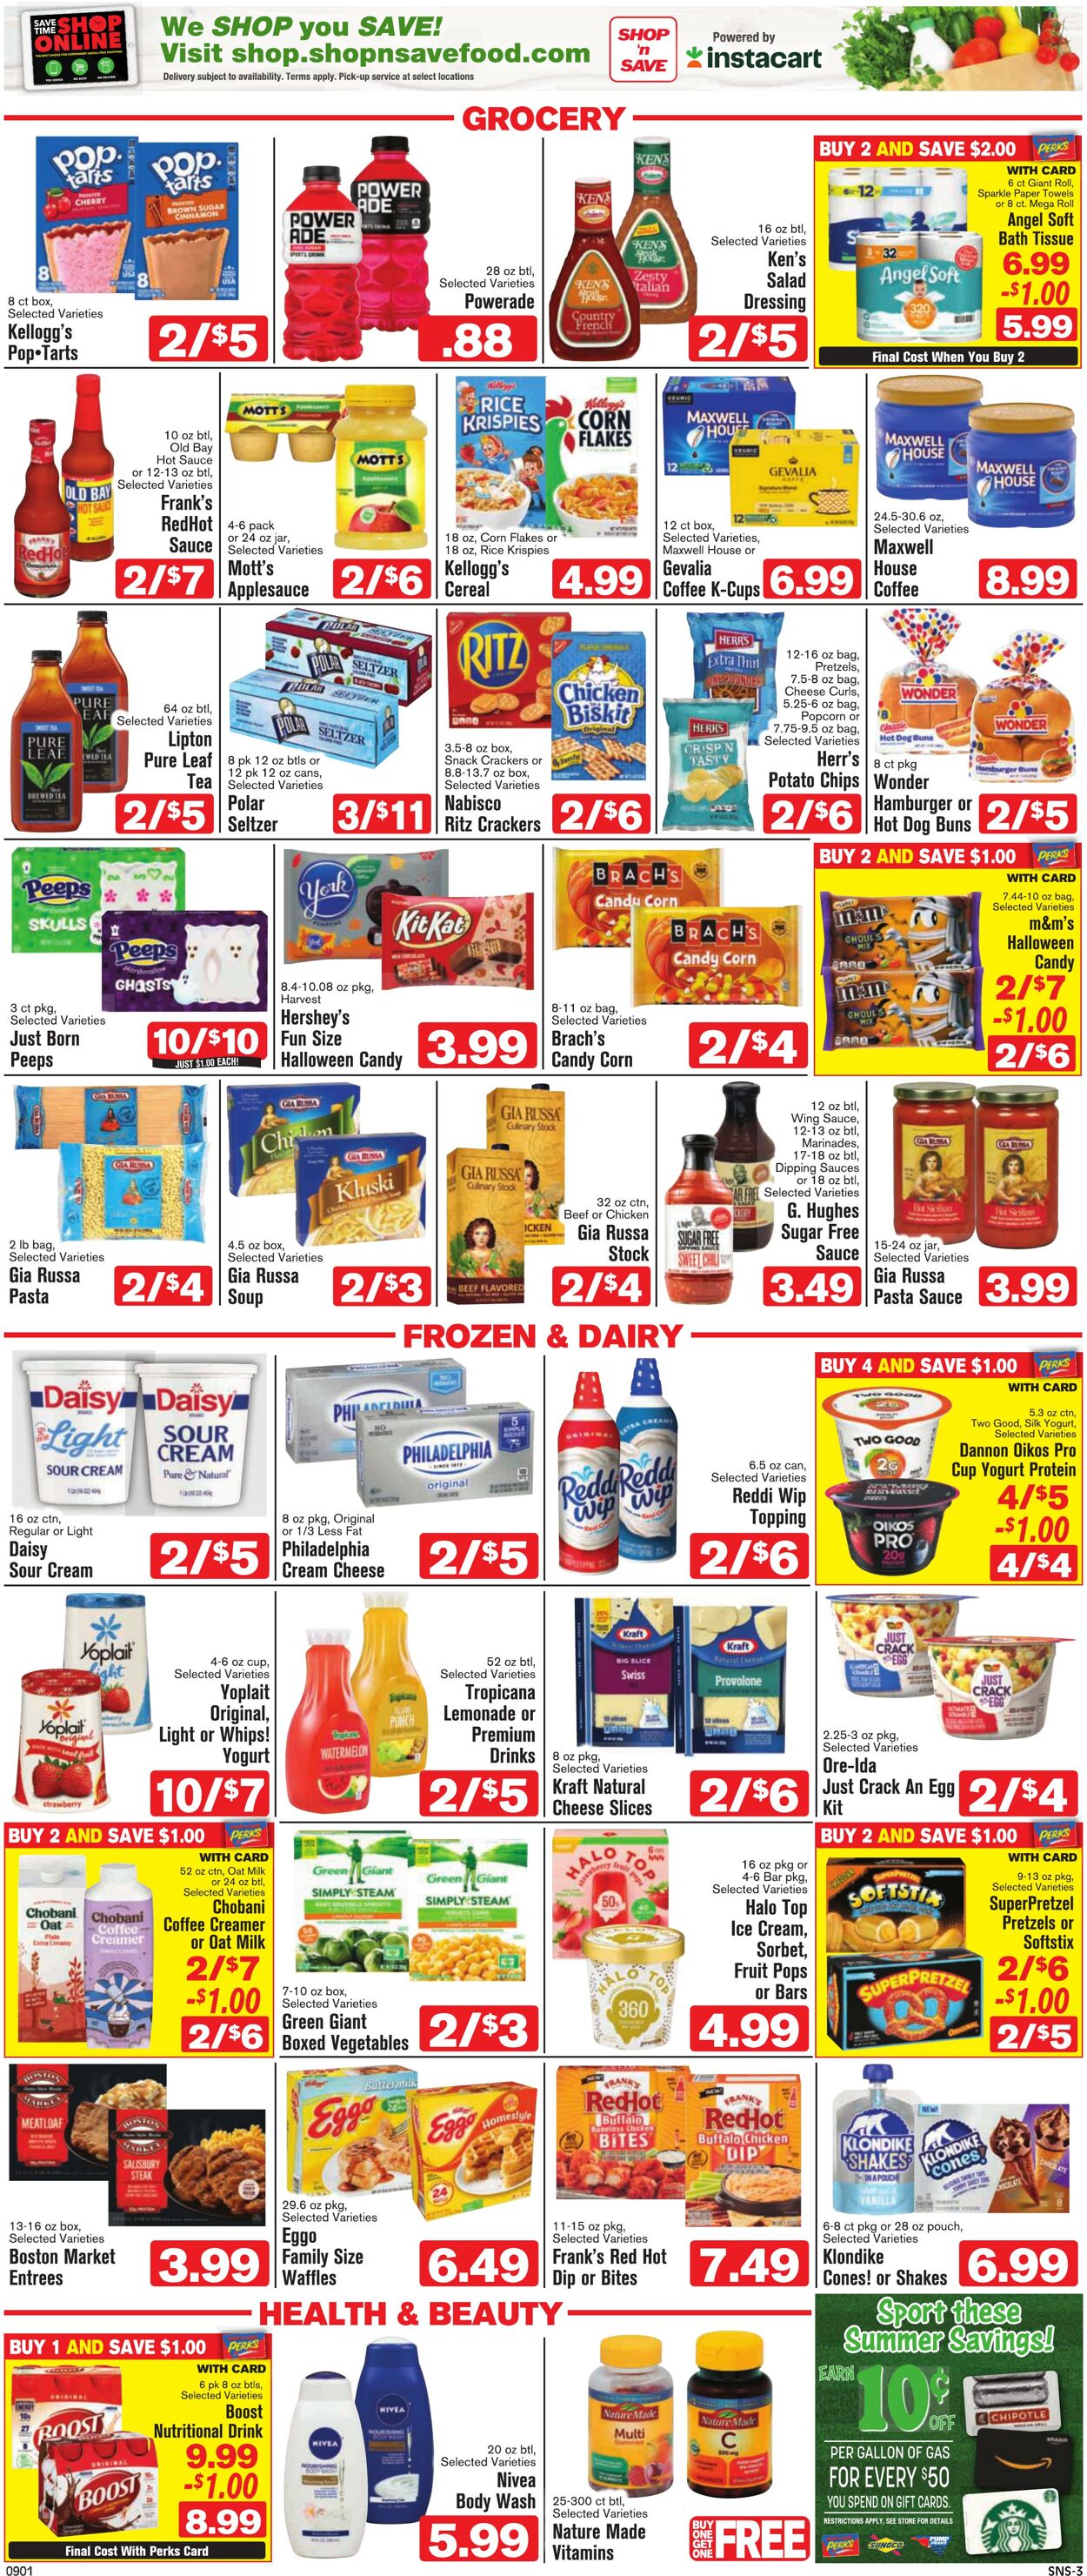 Weekly ad Shop'n Save 09/01/2022 - 09/07/2022